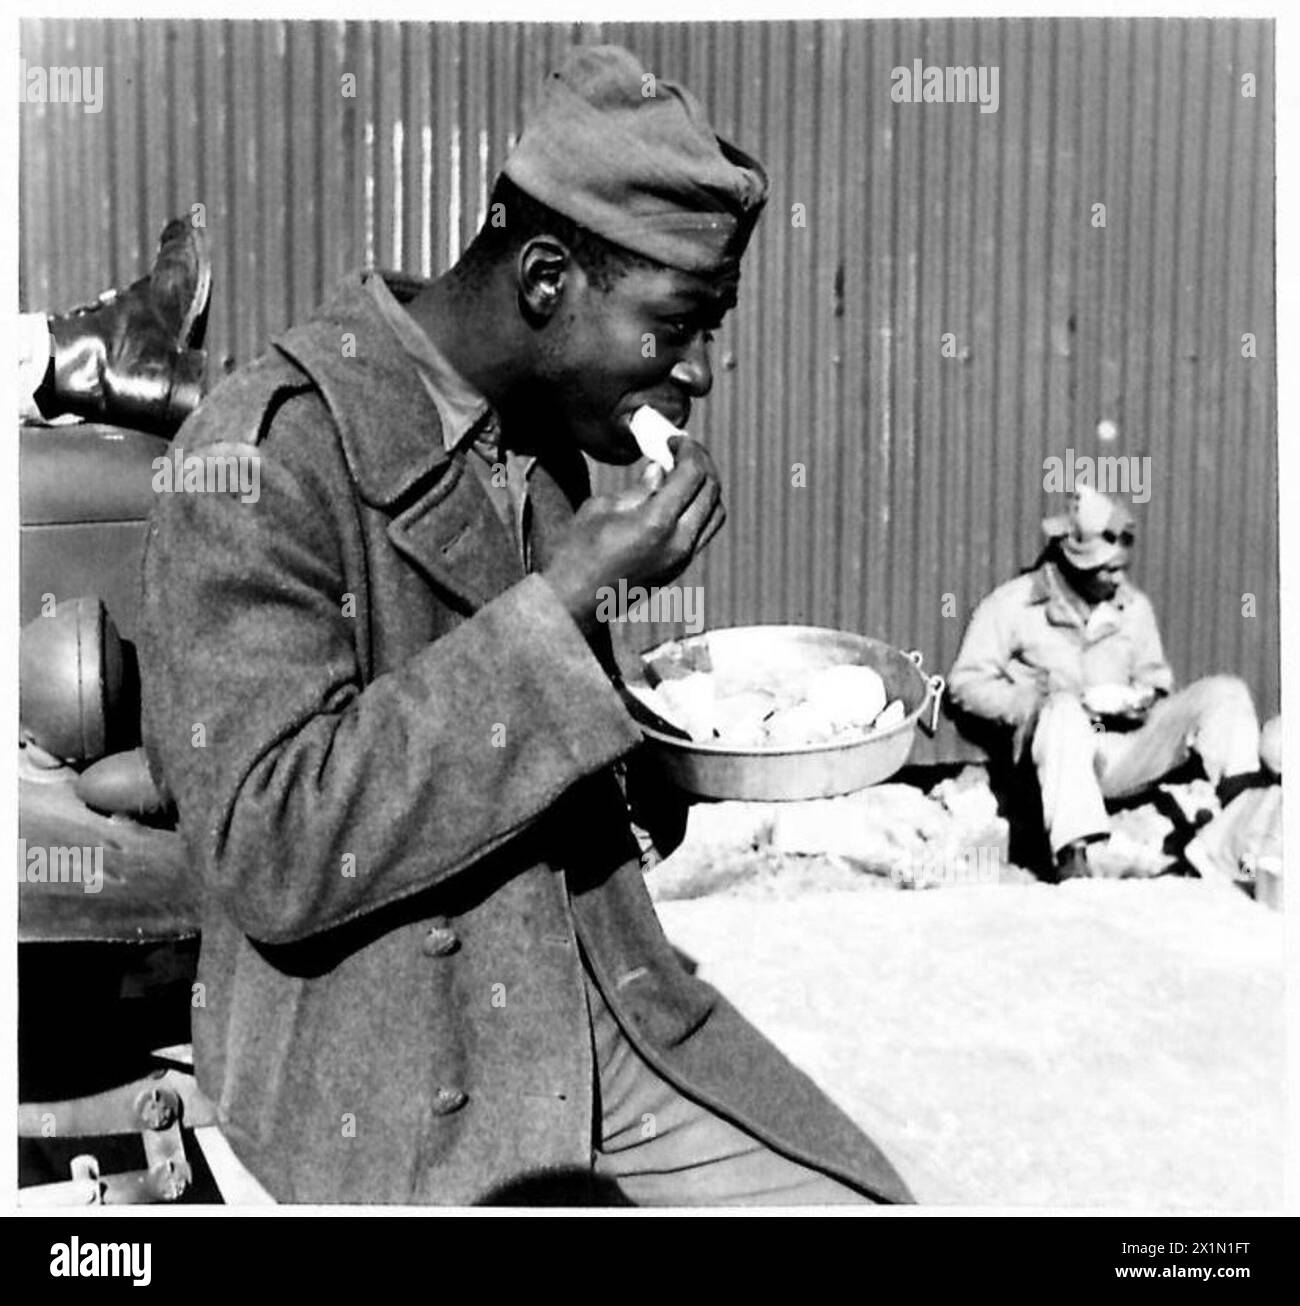 DÉPÔT D'APPROVISIONNEMENT GÉNÉRAL POUR LES MAGASINS ET L'ÉQUIPEMENT AMÉRICAINS - soldats noirs américains travaillant au dépôt mangeant leur repas de midi, l'armée britannique Banque D'Images